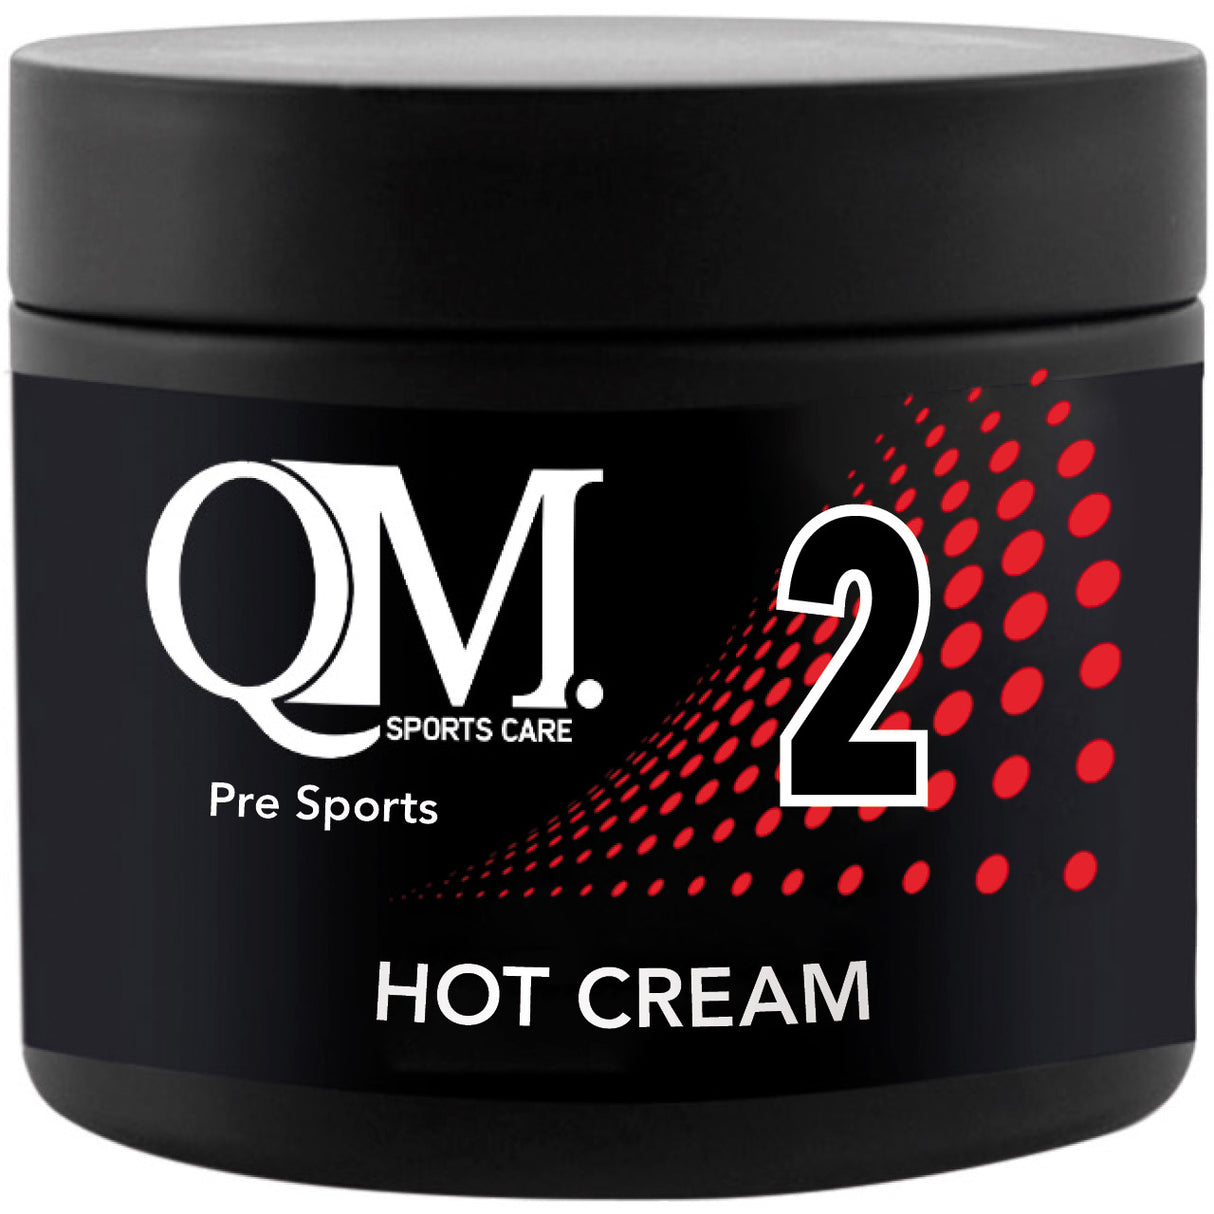 Qm 2 hot cream pot 200ml